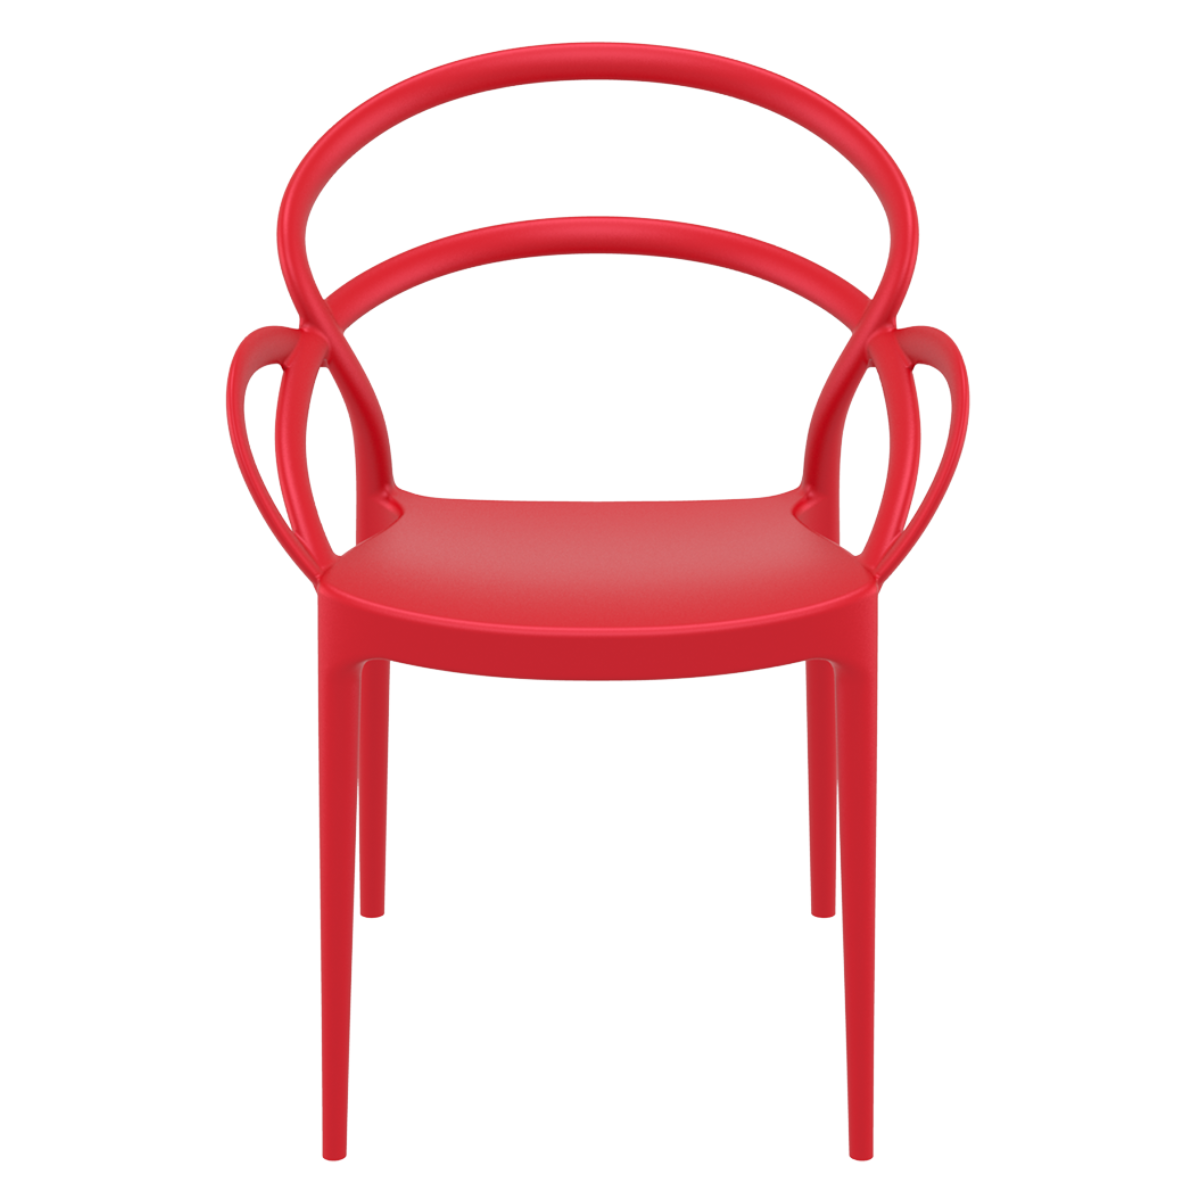 ST MILA Piros design Műanyag kültéri szék